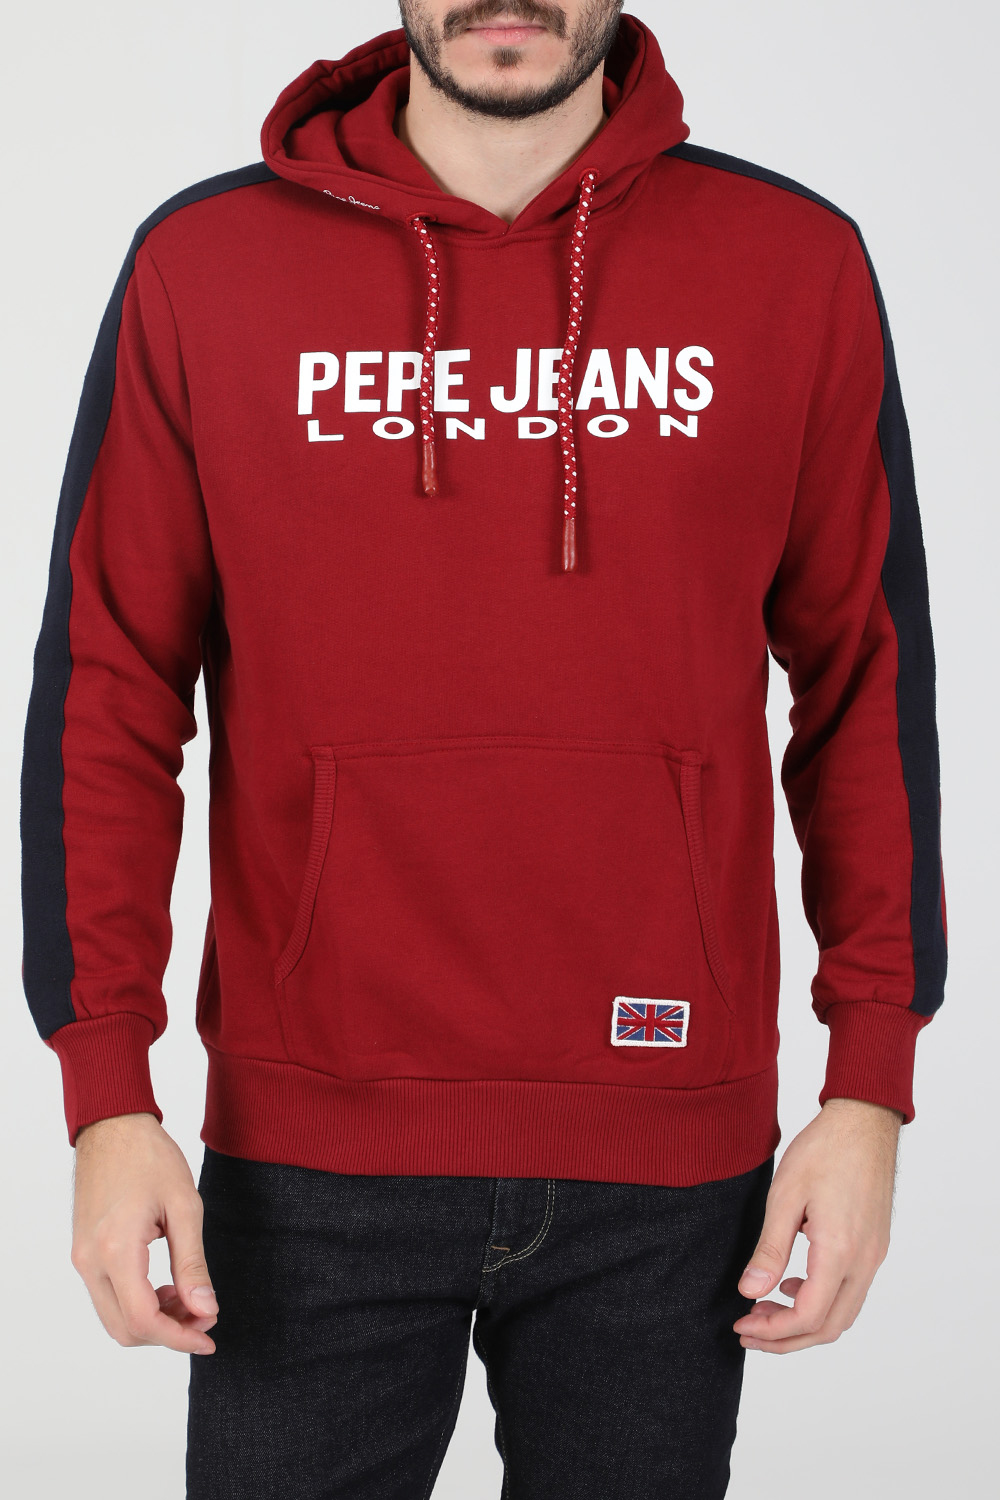 Ανδρικά/Ρούχα/Φούτερ/Μπλούζες PEPE JEANS - Ανδρική φούτερ μπλούζα PEPE JEANS ANDRE κόκκινη